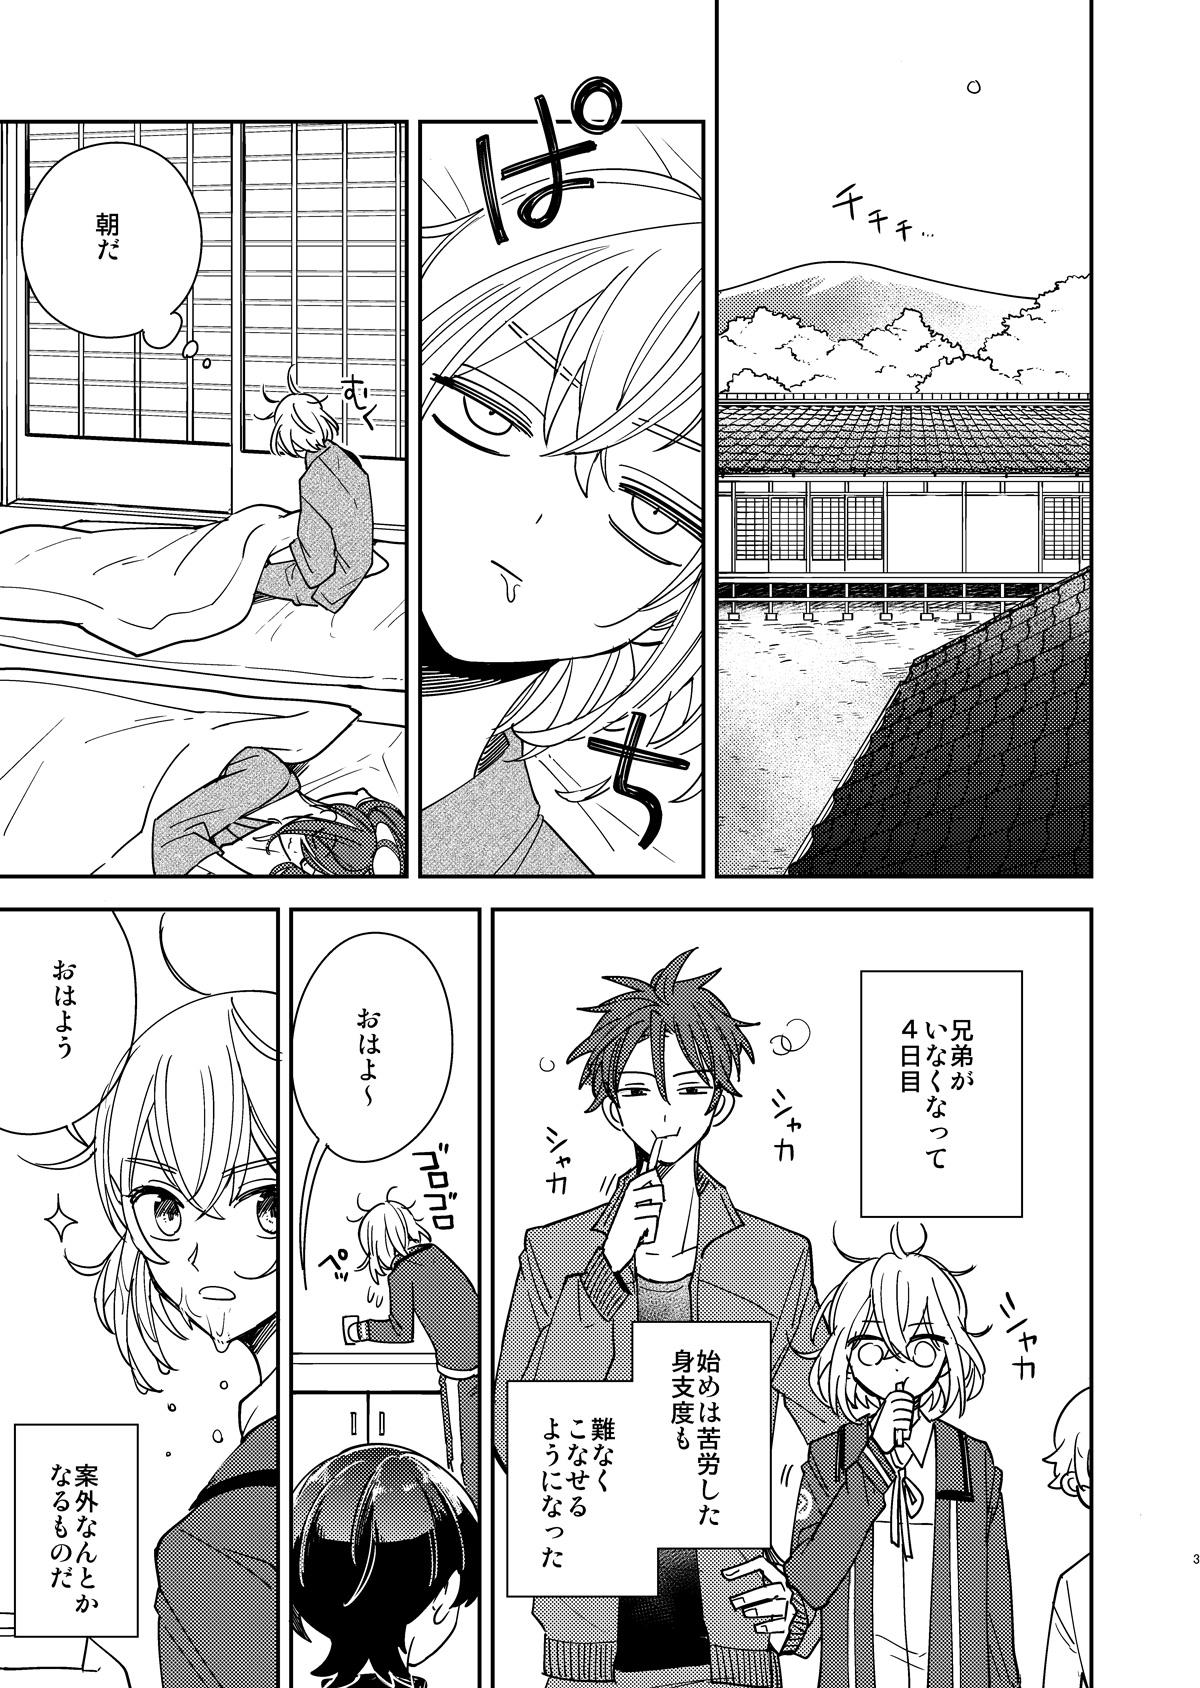 Closeup Kimi to Yoru、Soroi no Yume ga Mitainoda - Touken ranbu Couple - Page 4